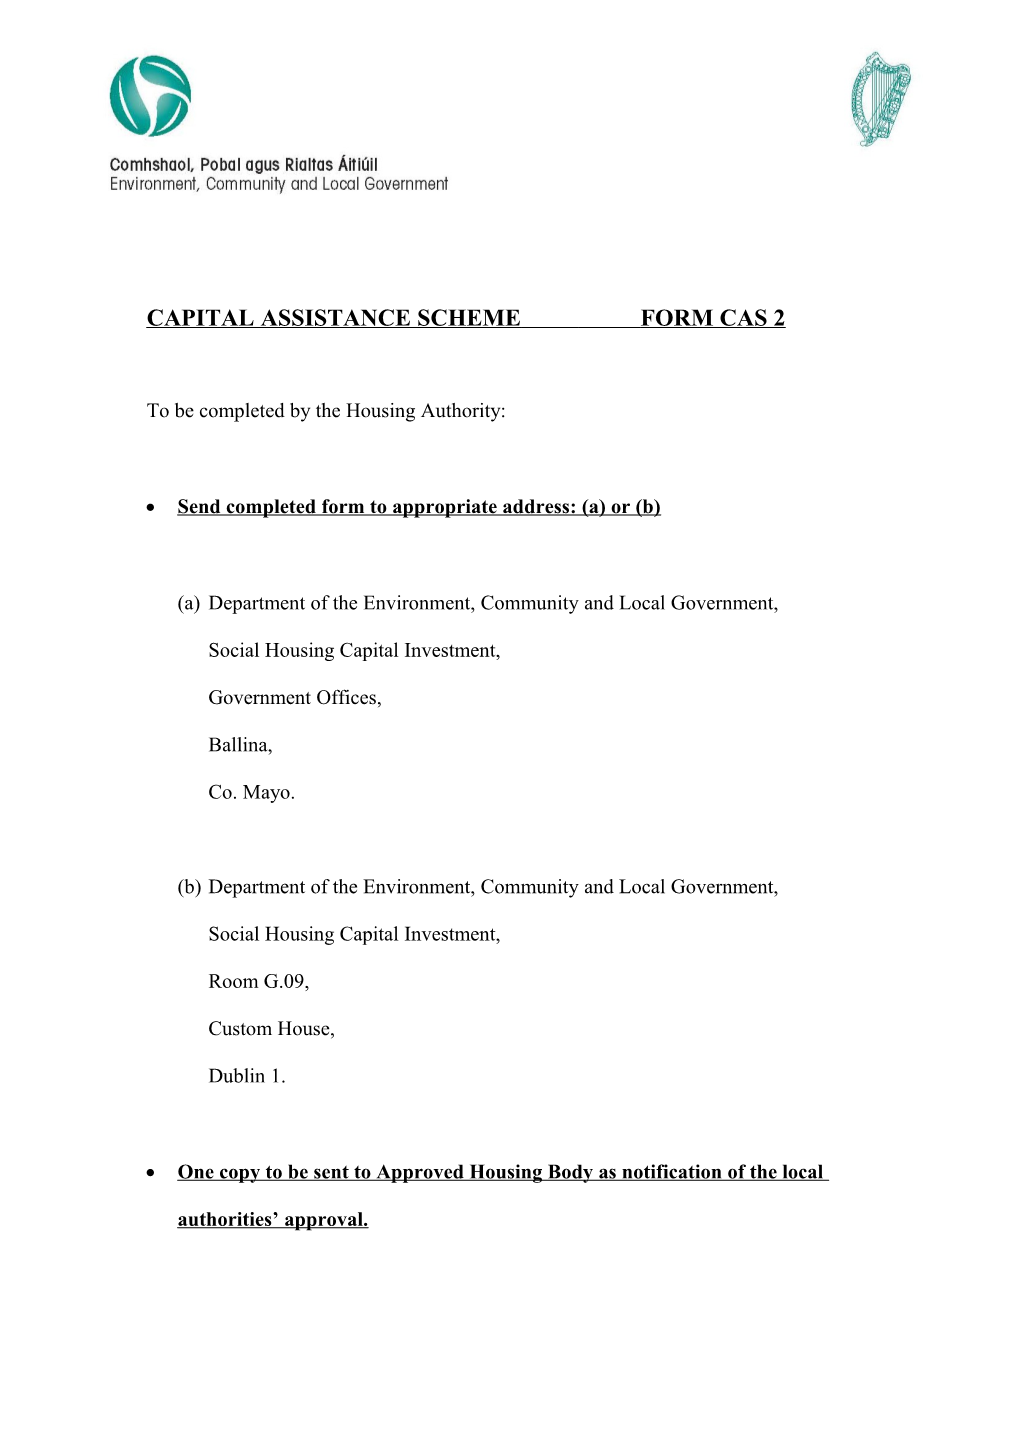 Capital Assistance Scheme